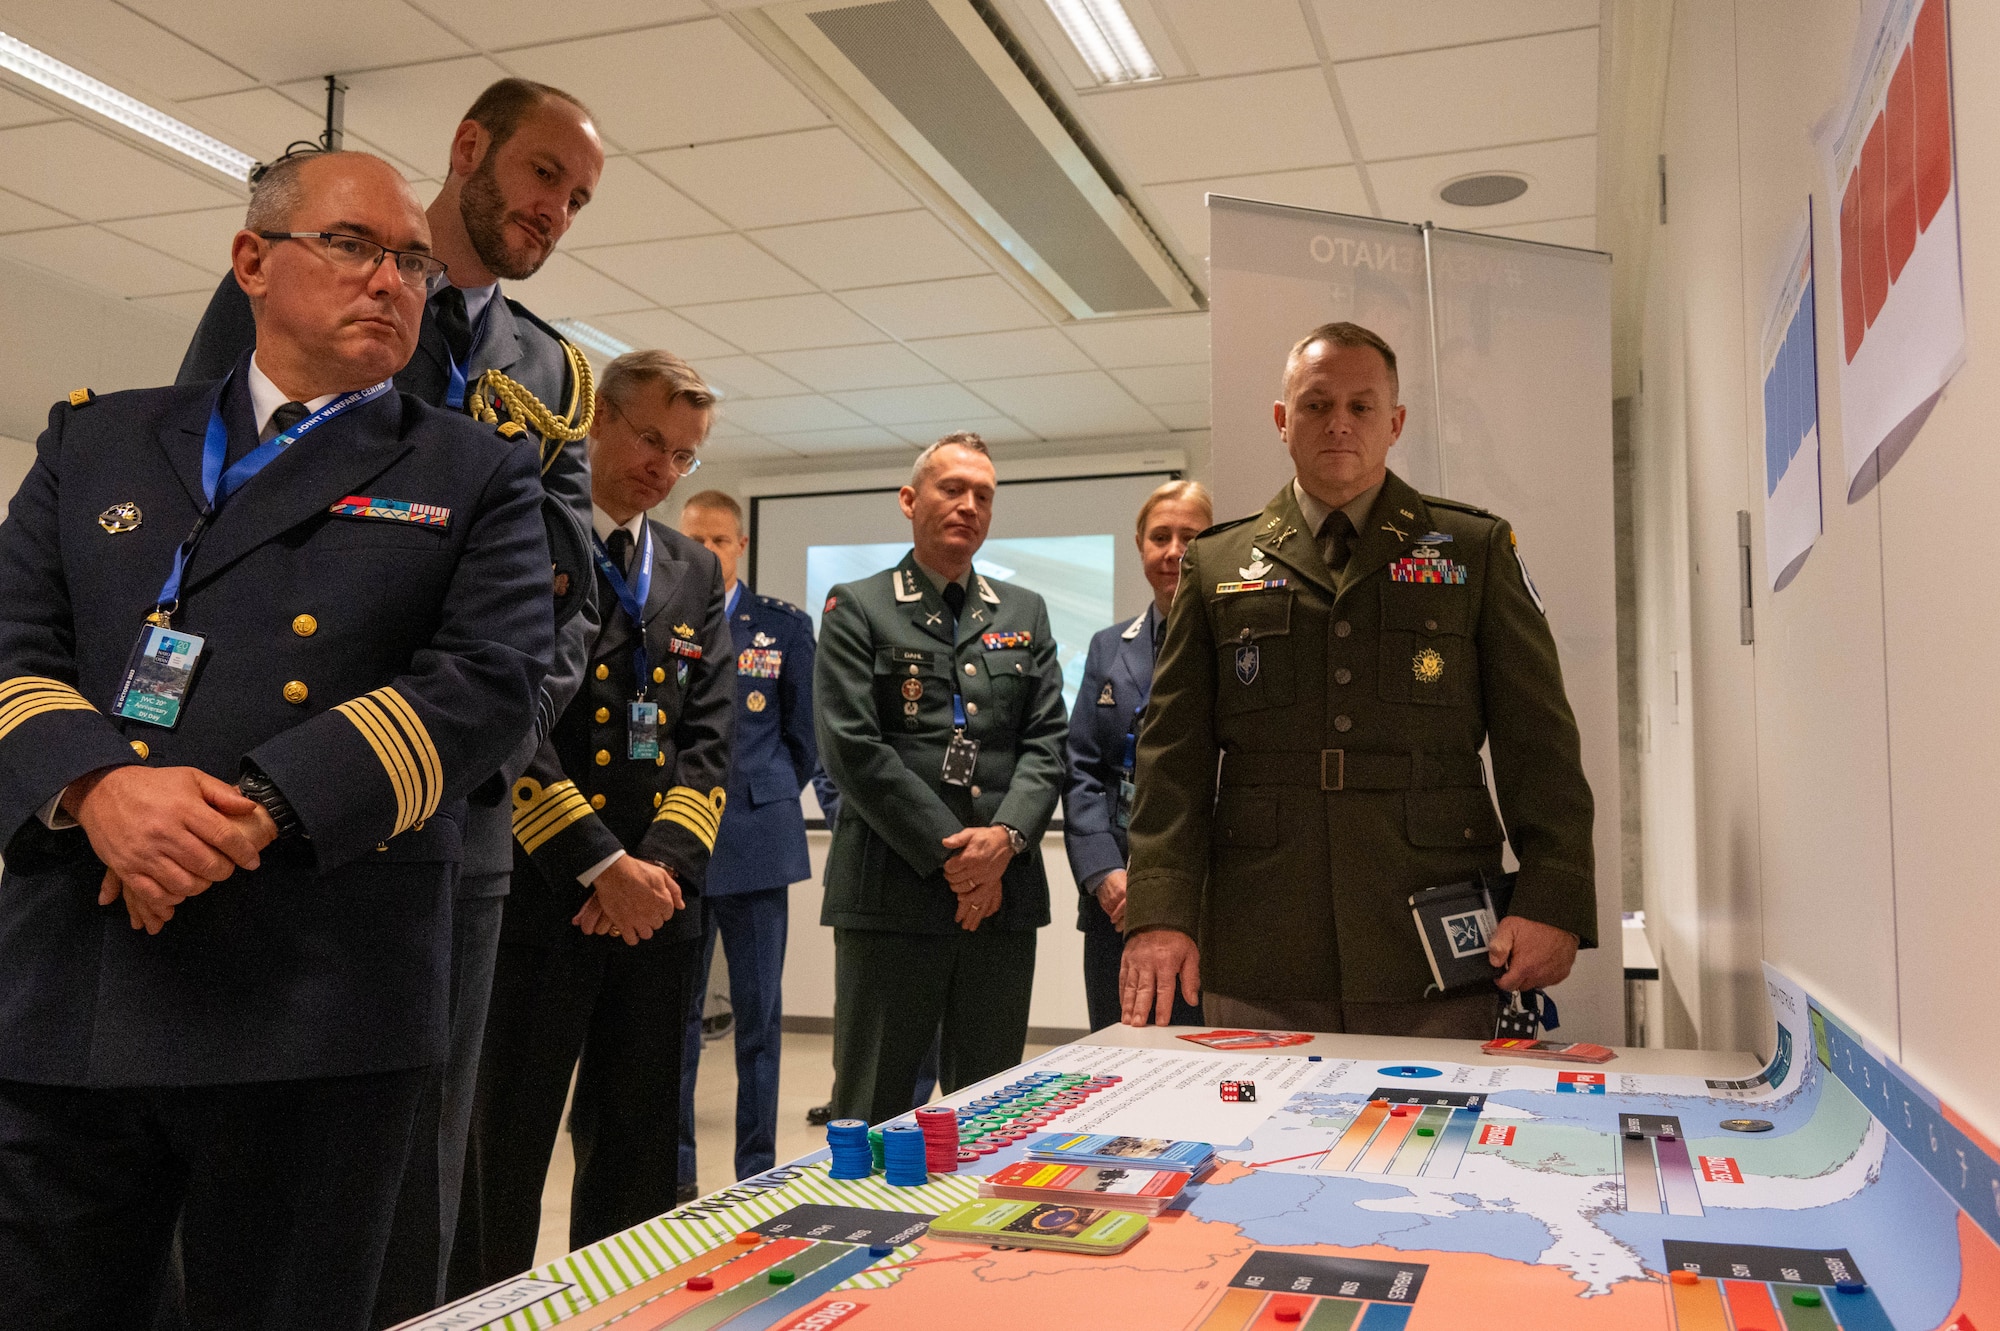 Military dignitaries view a wargaming board.